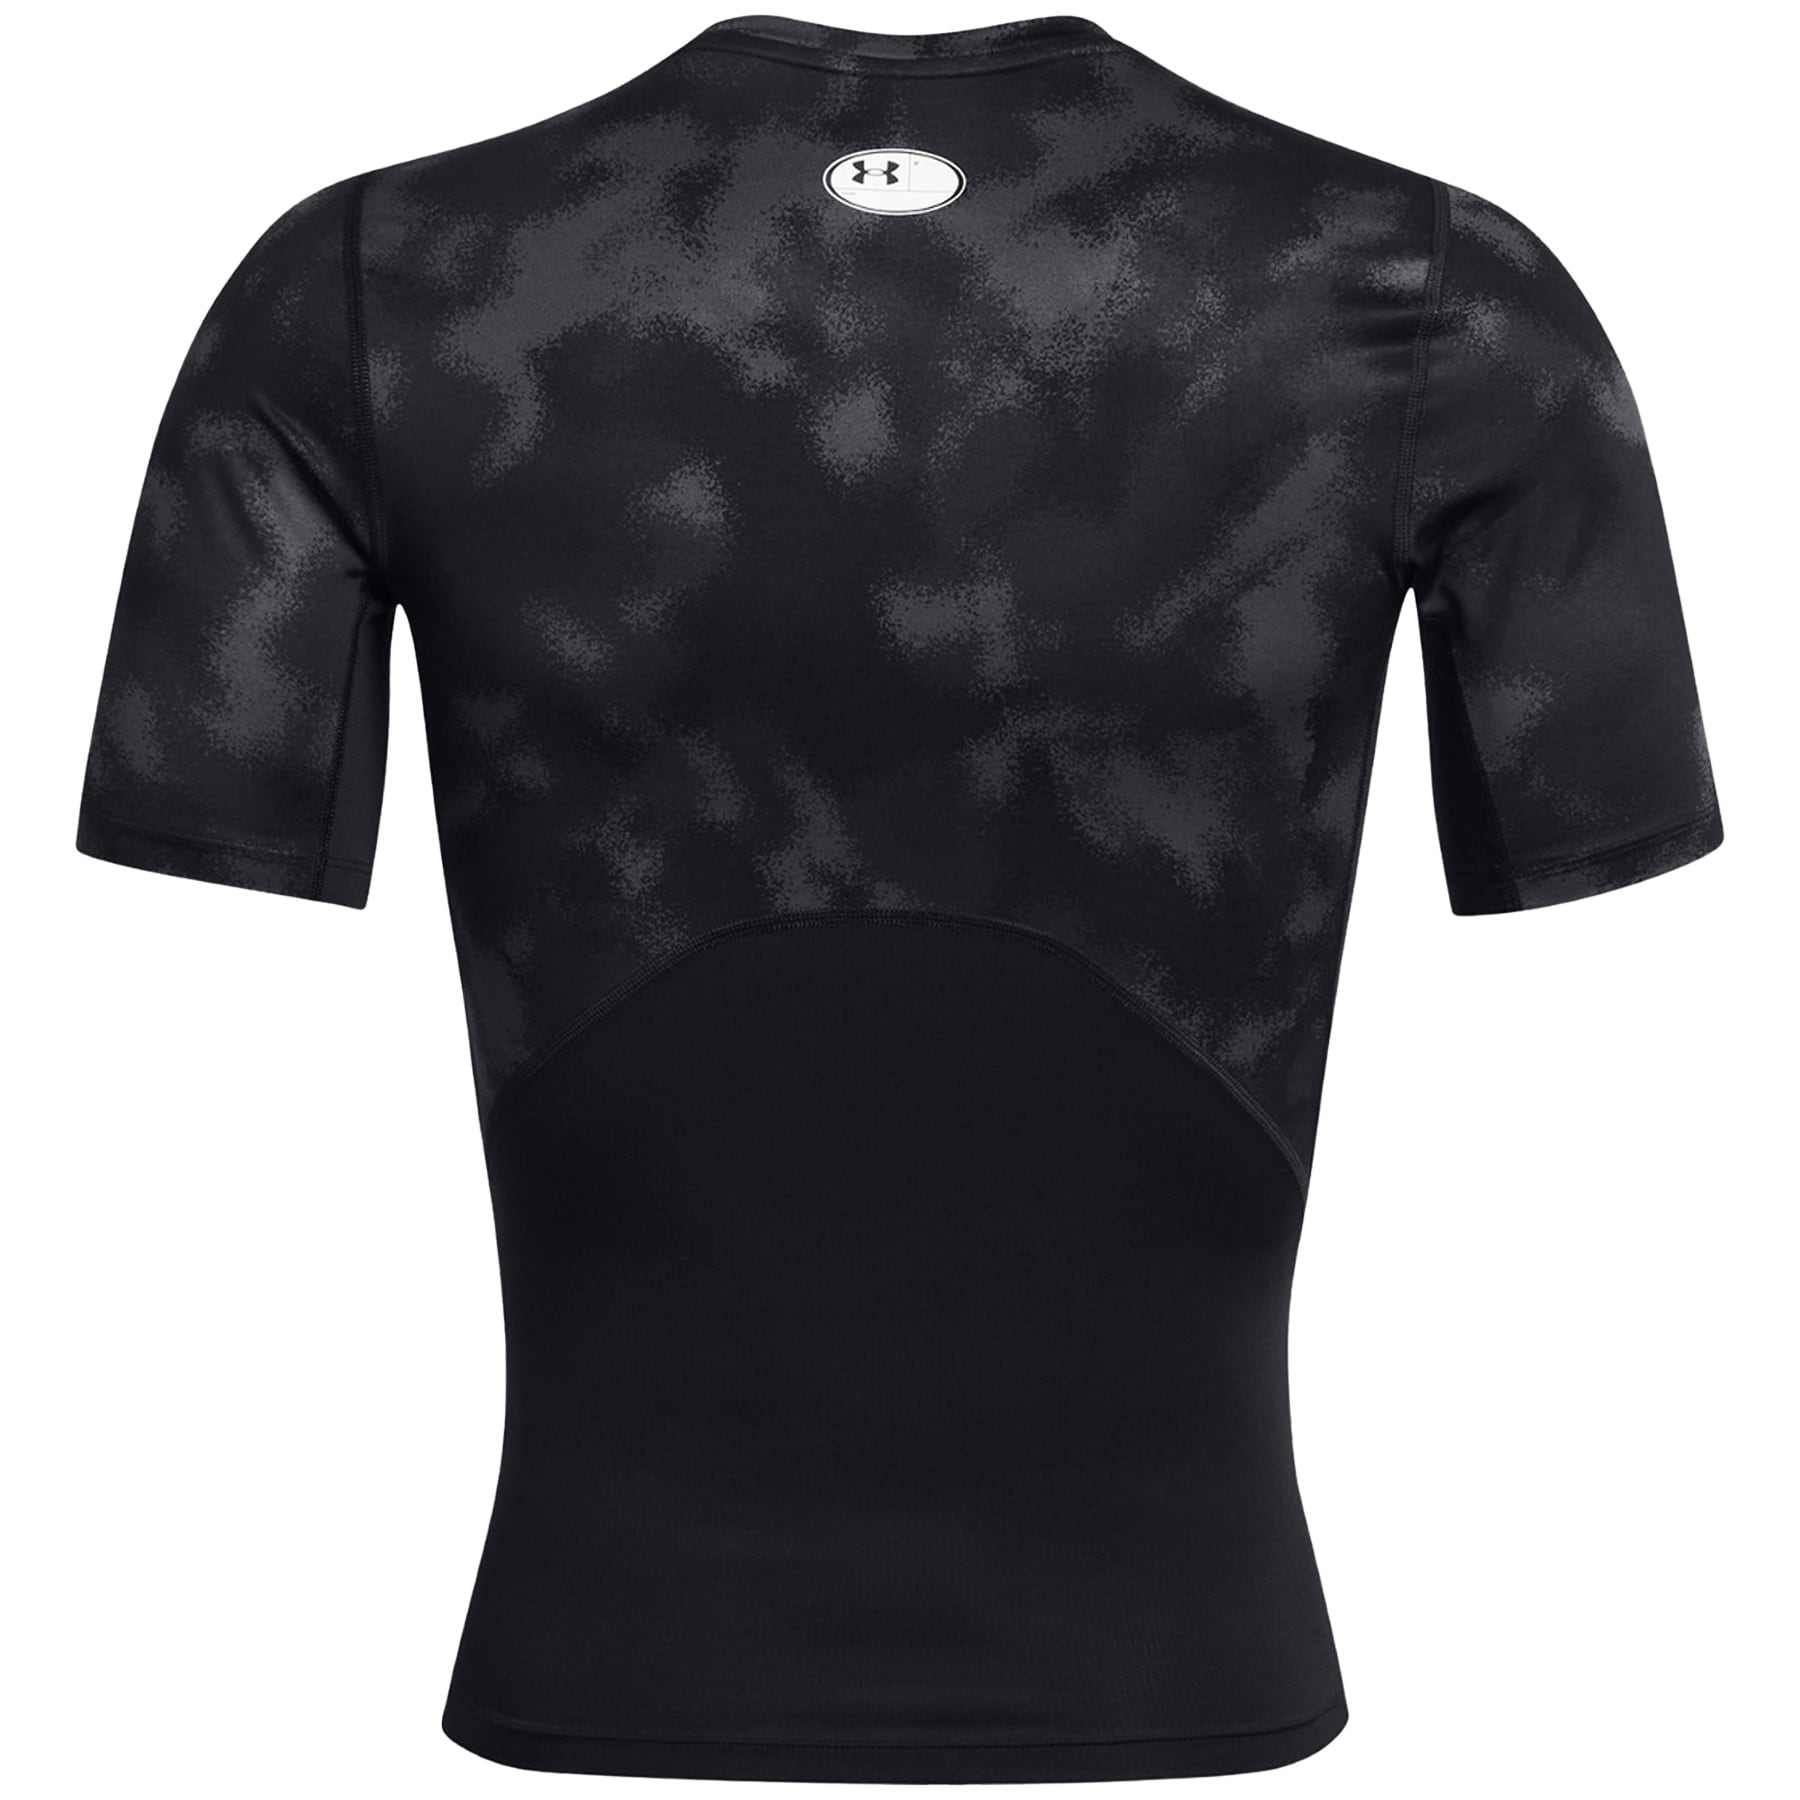 Koszulka termoaktywna Under Armour HeatGear Printed - Black/White